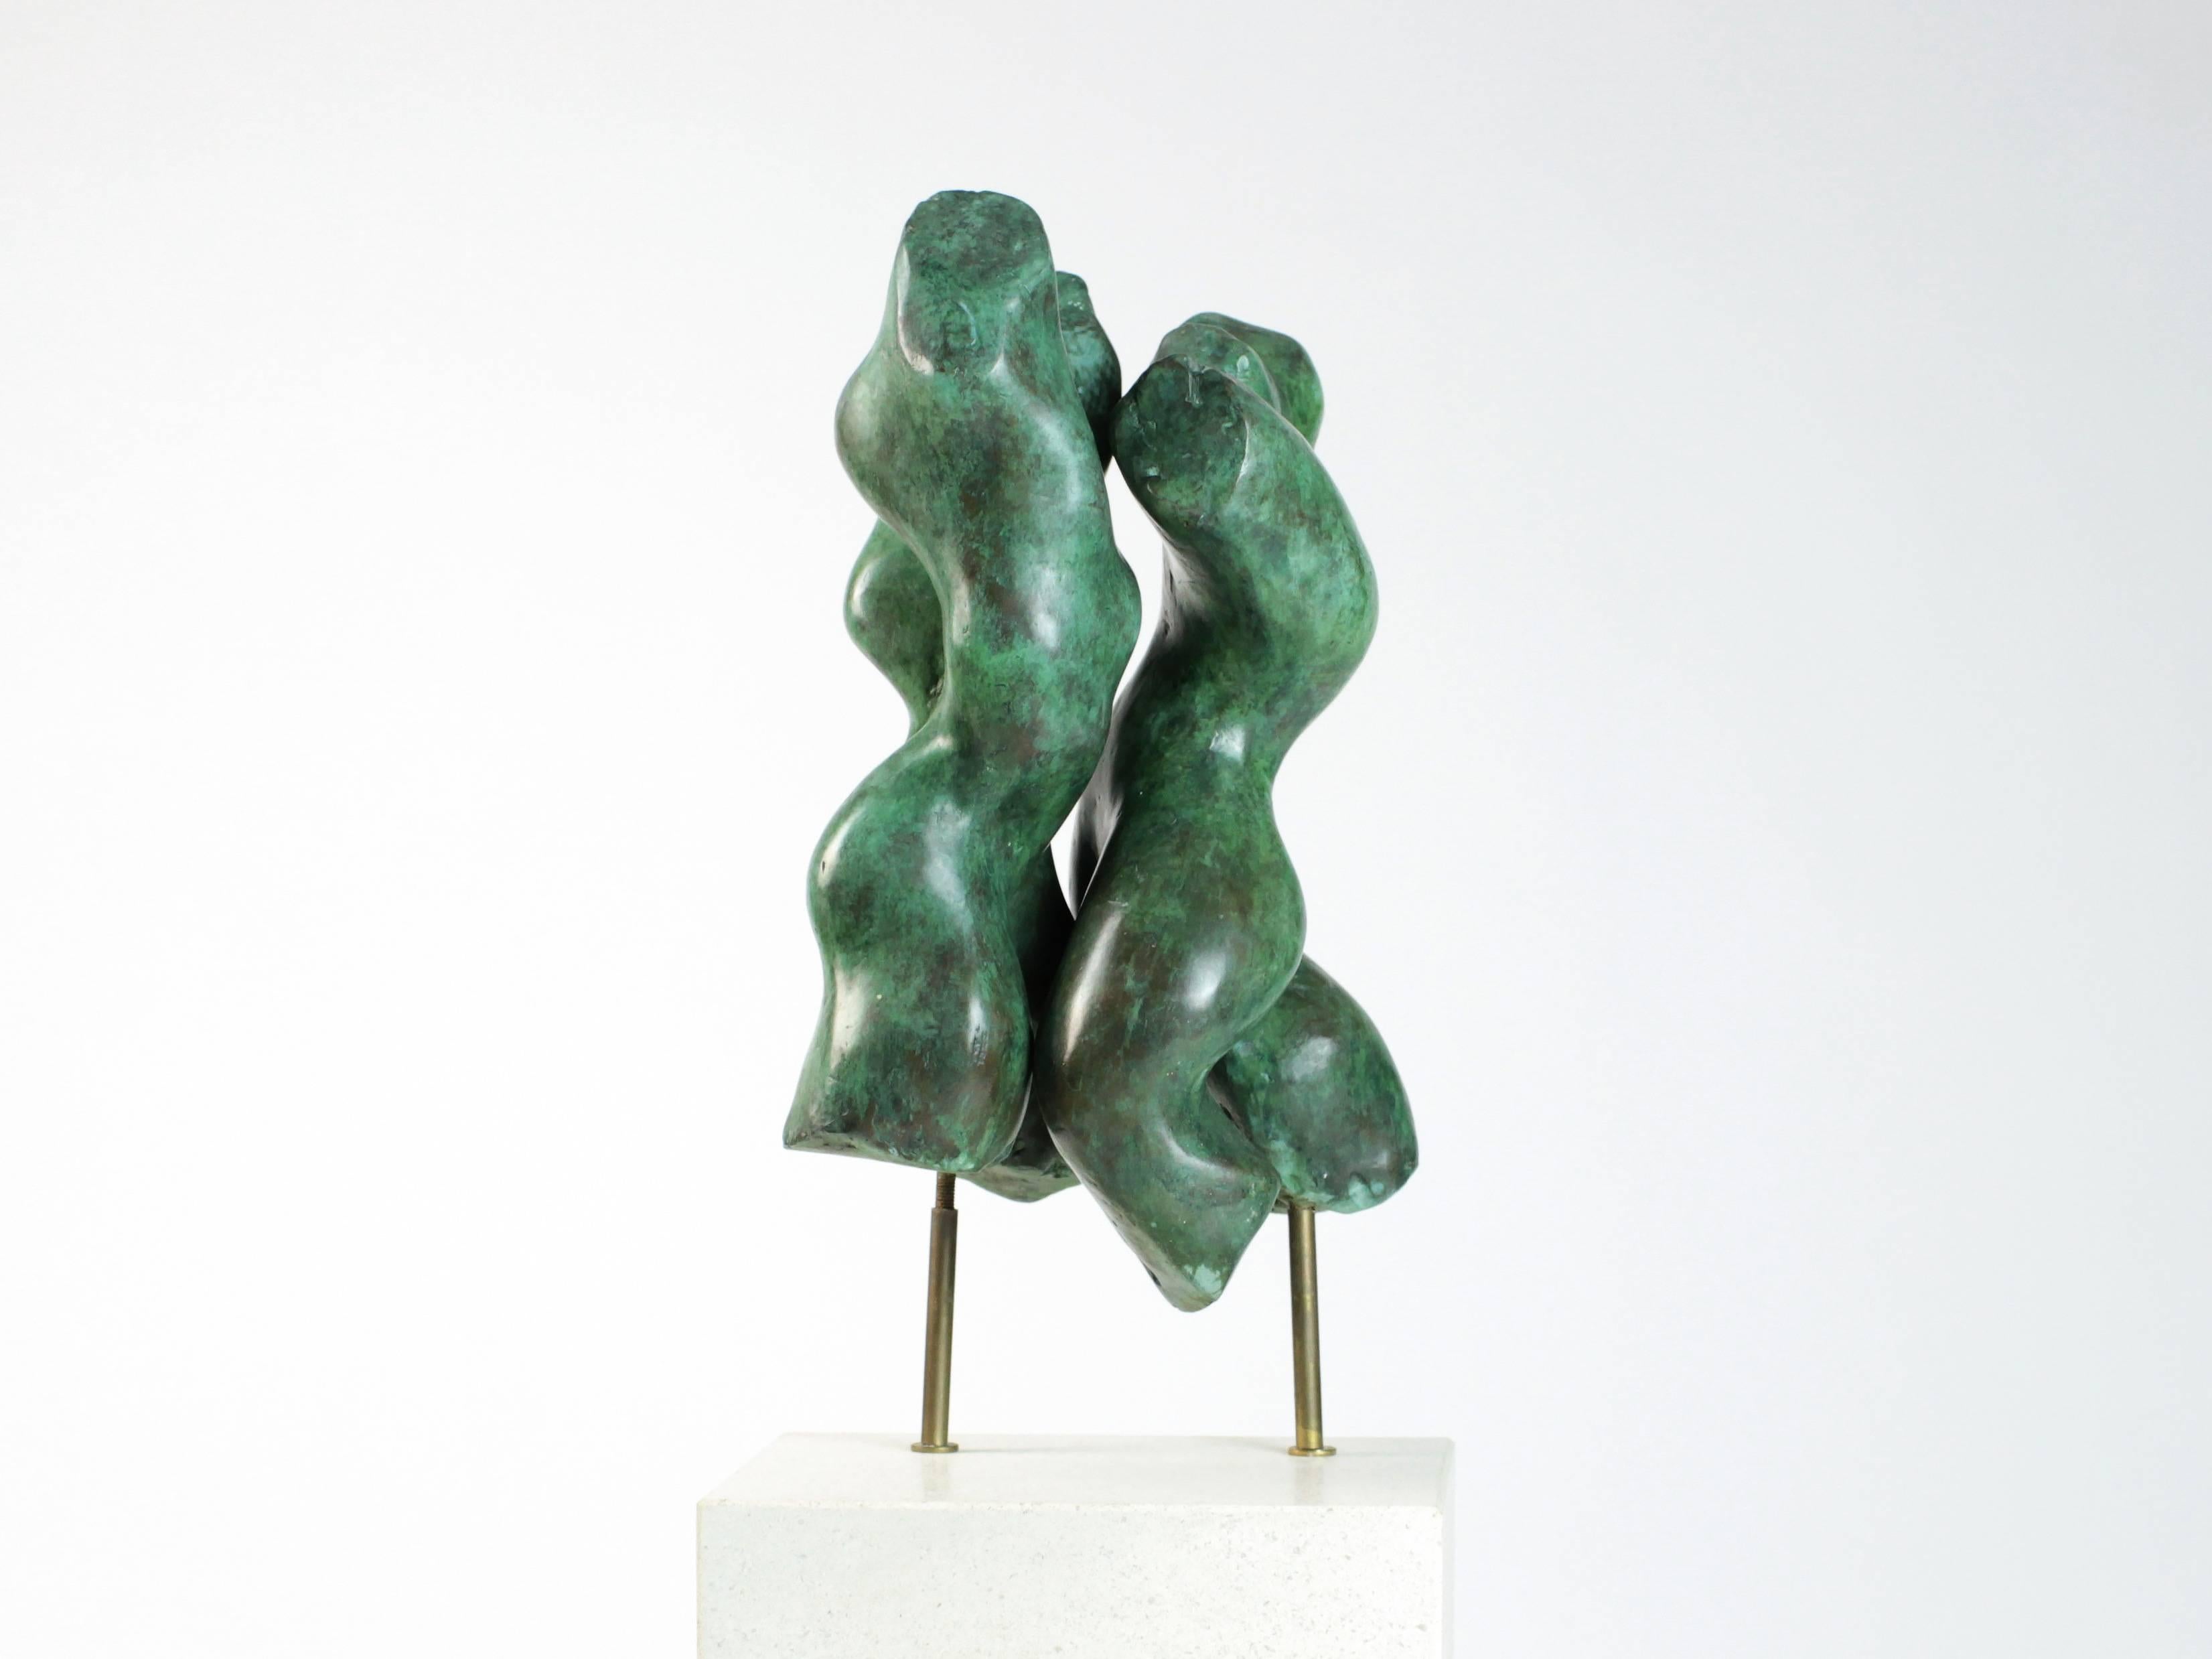 Tango est une sculpture en bronze sur socle de l'artiste contemporain Yann Guillon. Les dimensions sont de 26 x 19 x 17 cm (10.2 × 7.5 × 6.7 in), les dimensions de la base sont de 14 x 22 x 14 cm (5.5 x 8.7 x 5.5 in). La hauteur totale de la